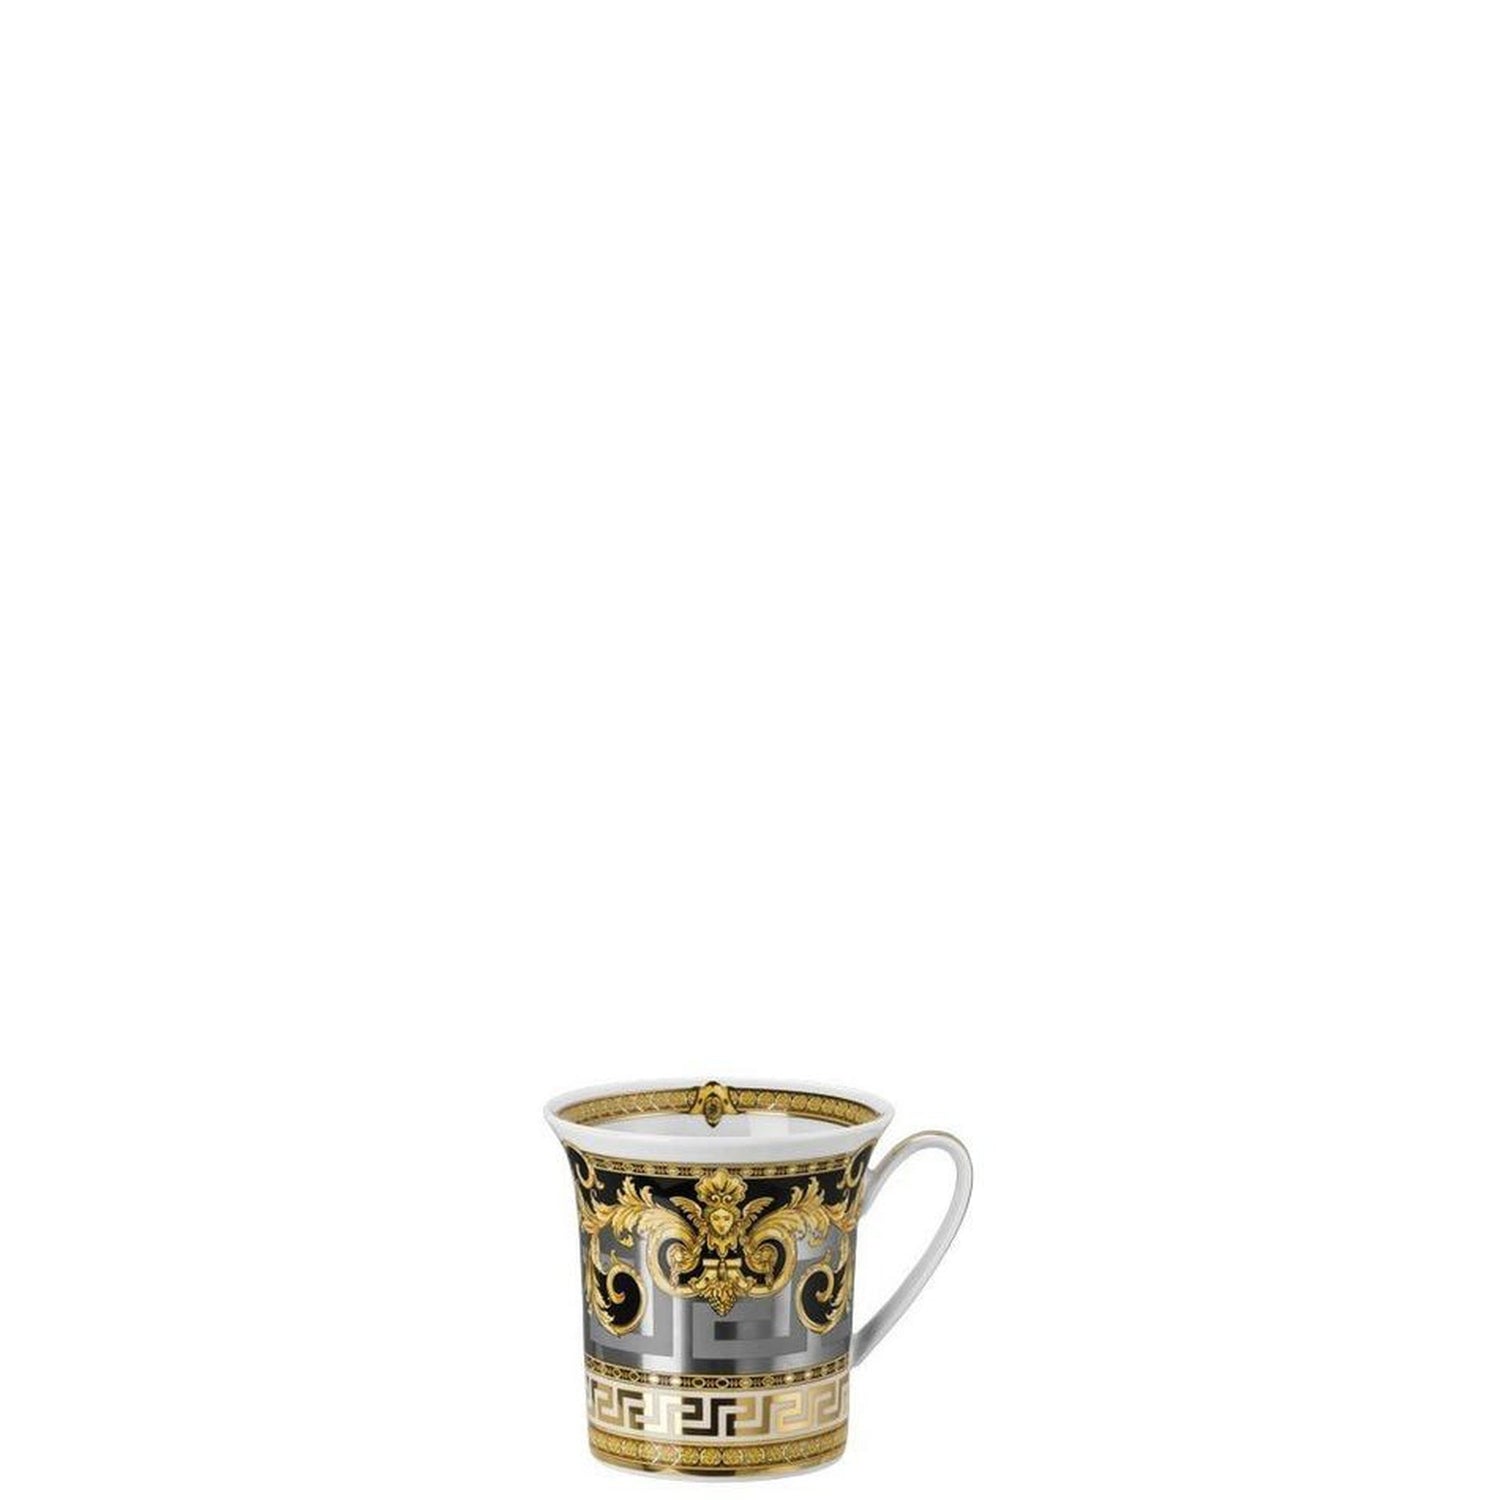 Swedish Grace Gala Tea Cup & Saucer, 45 cl